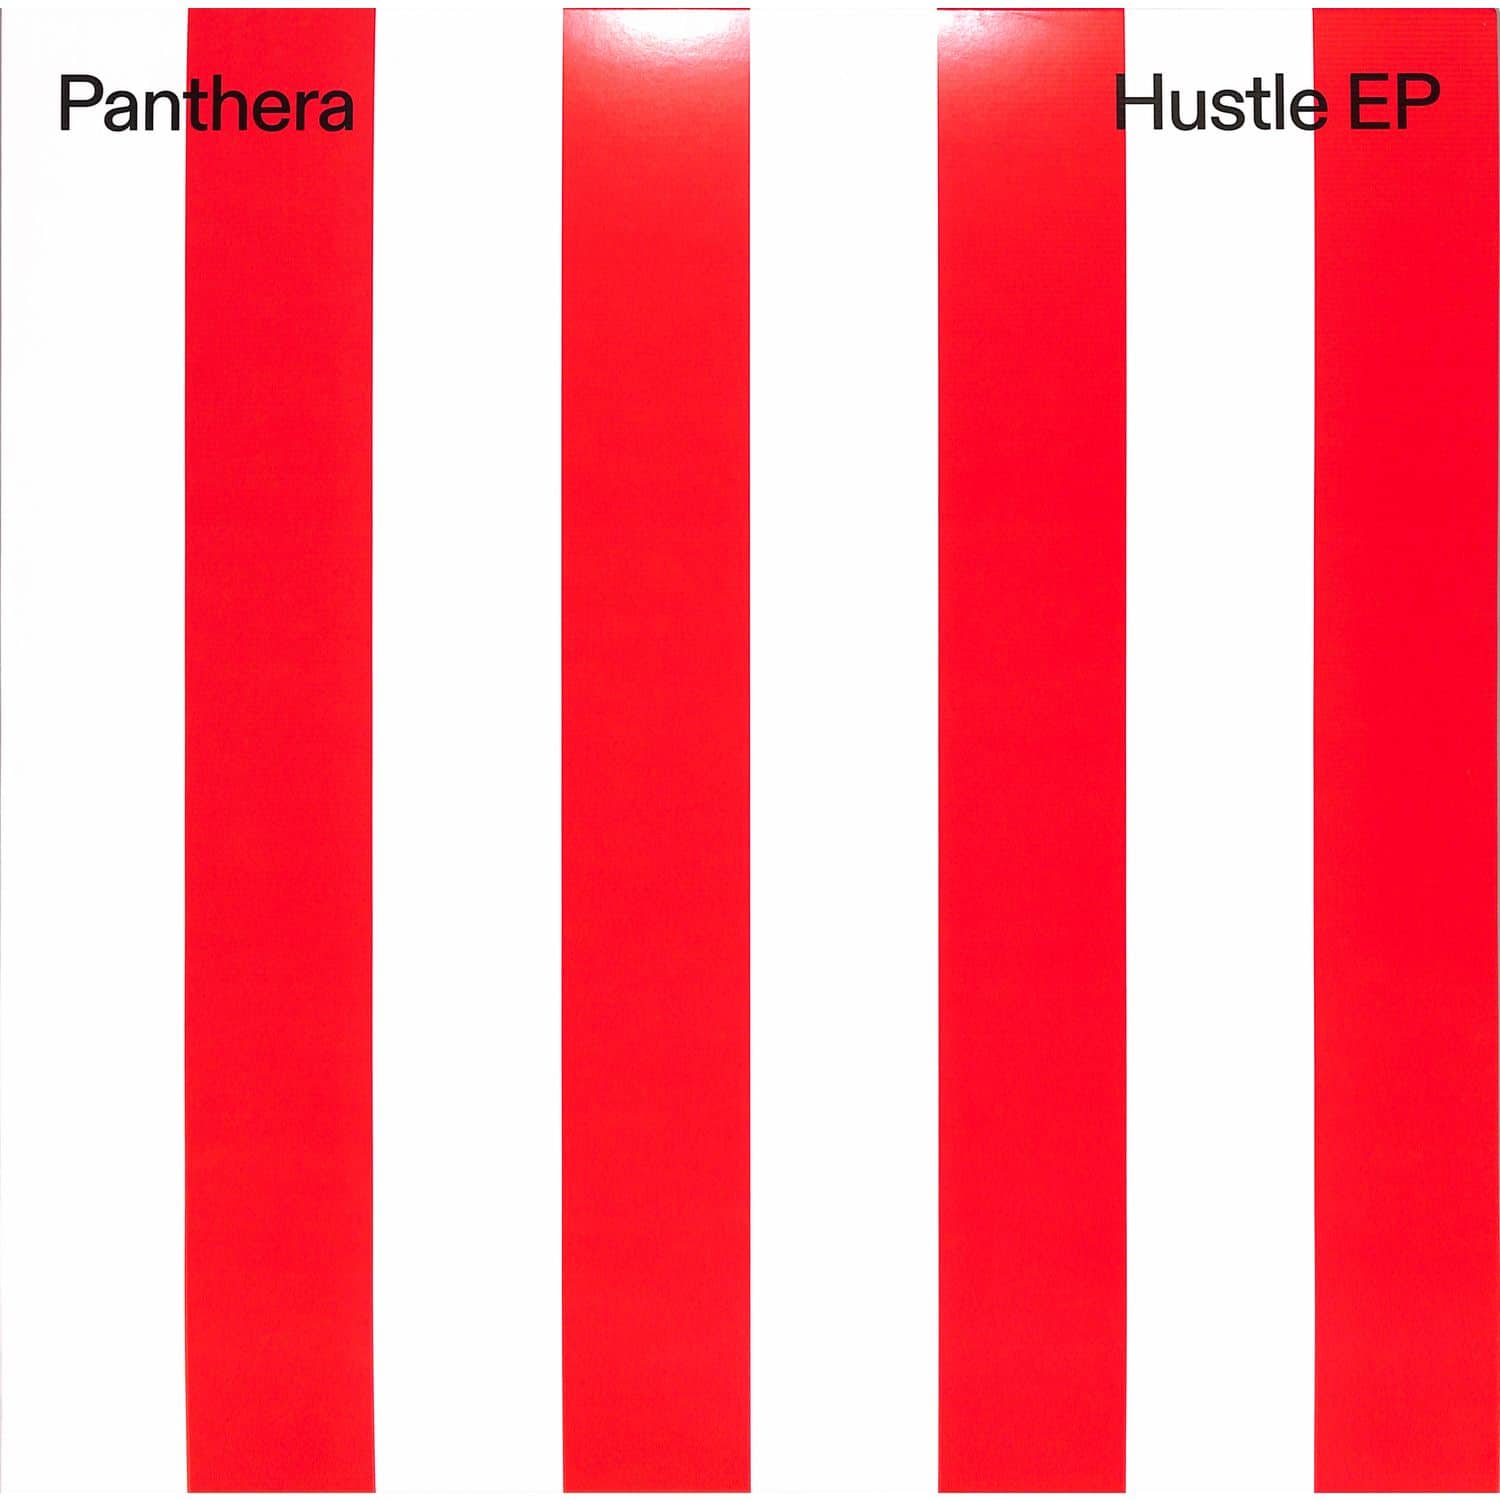 Panthera - HUSTLE EP